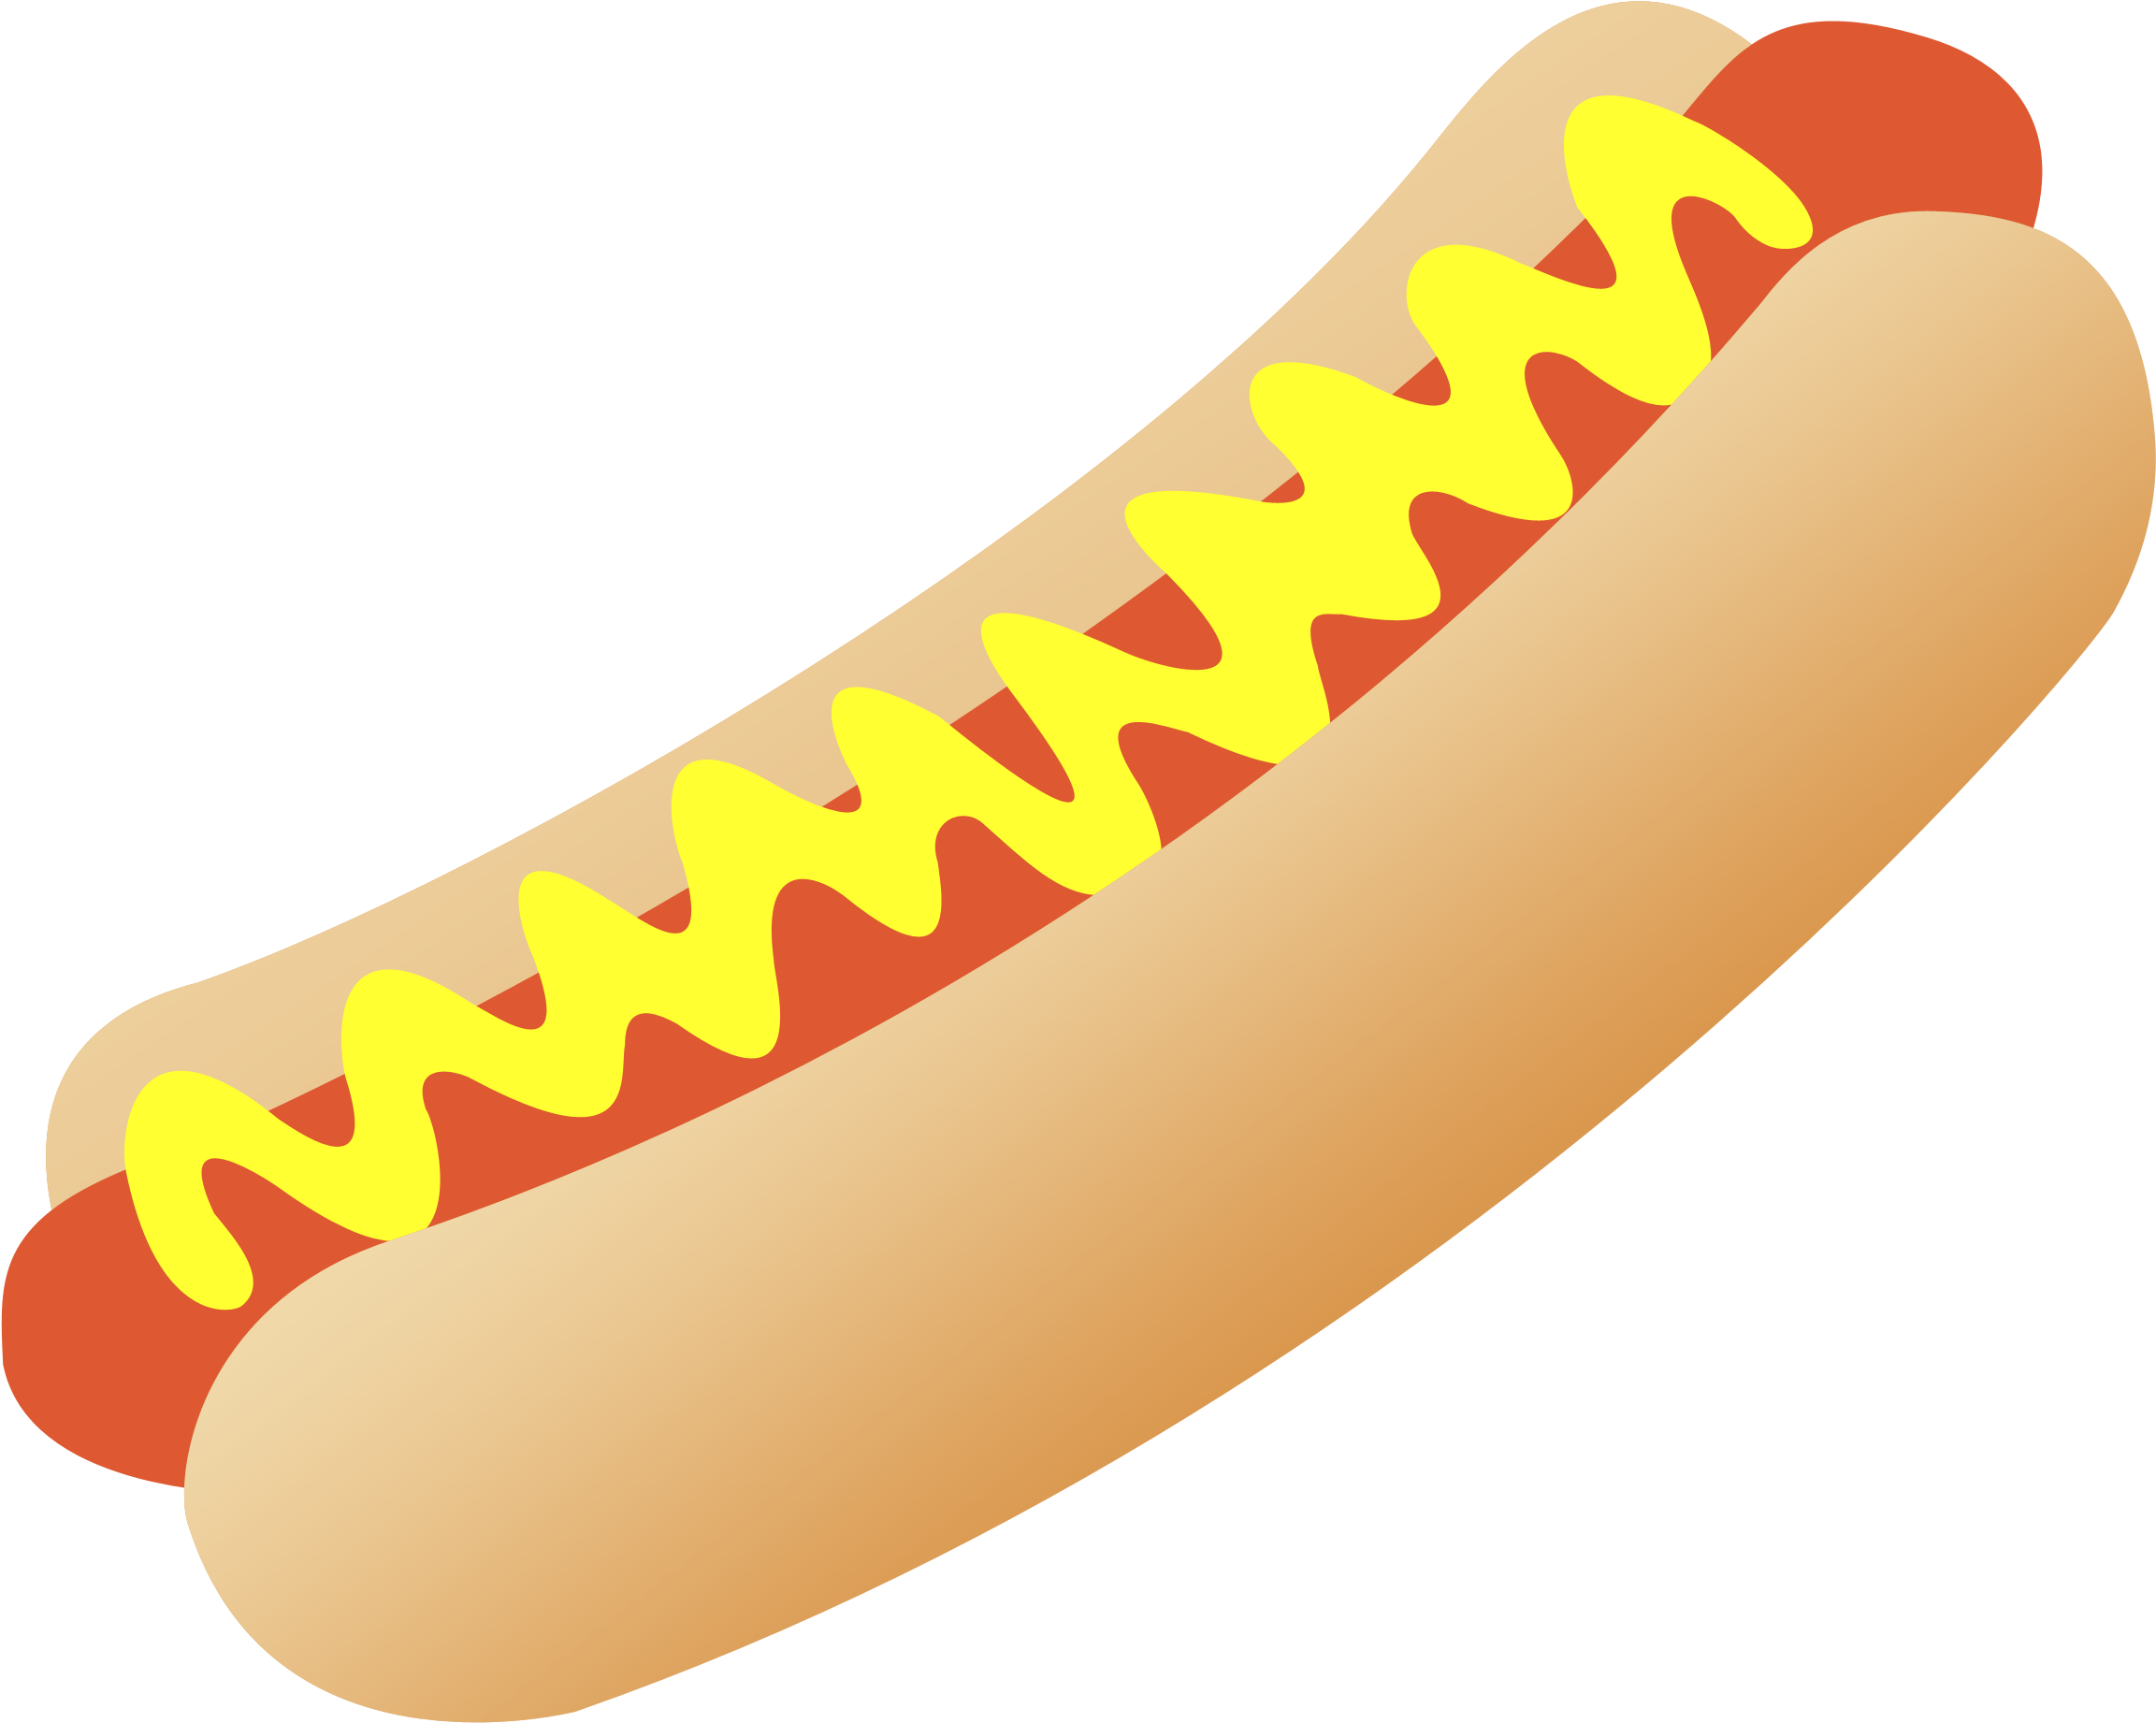 Hotdog - Hot Dog Transparent Vector (3359x2960)